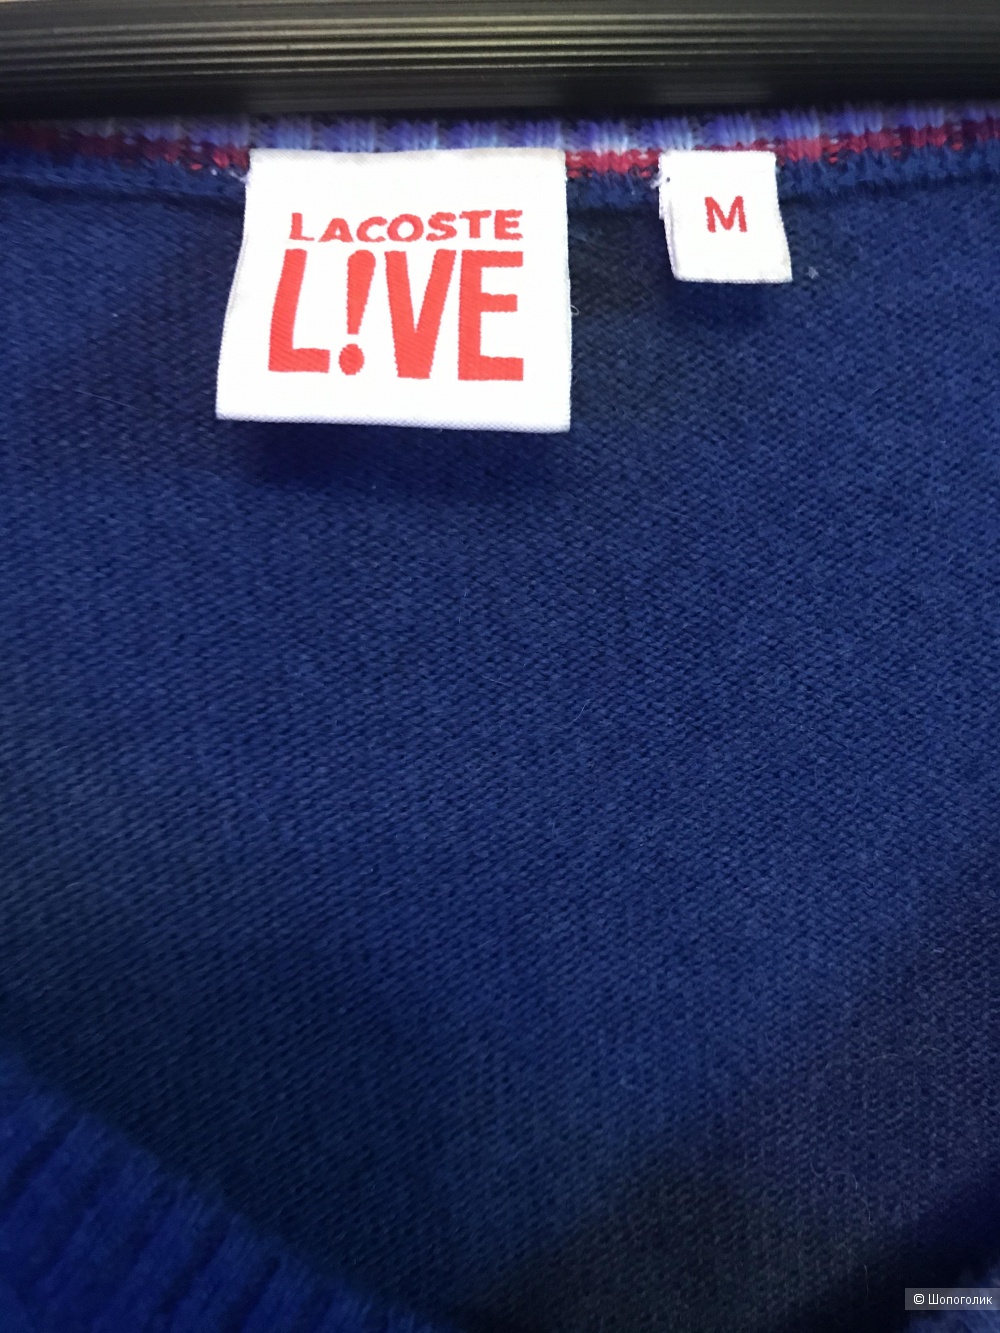 Свитер Lacoste live S-M